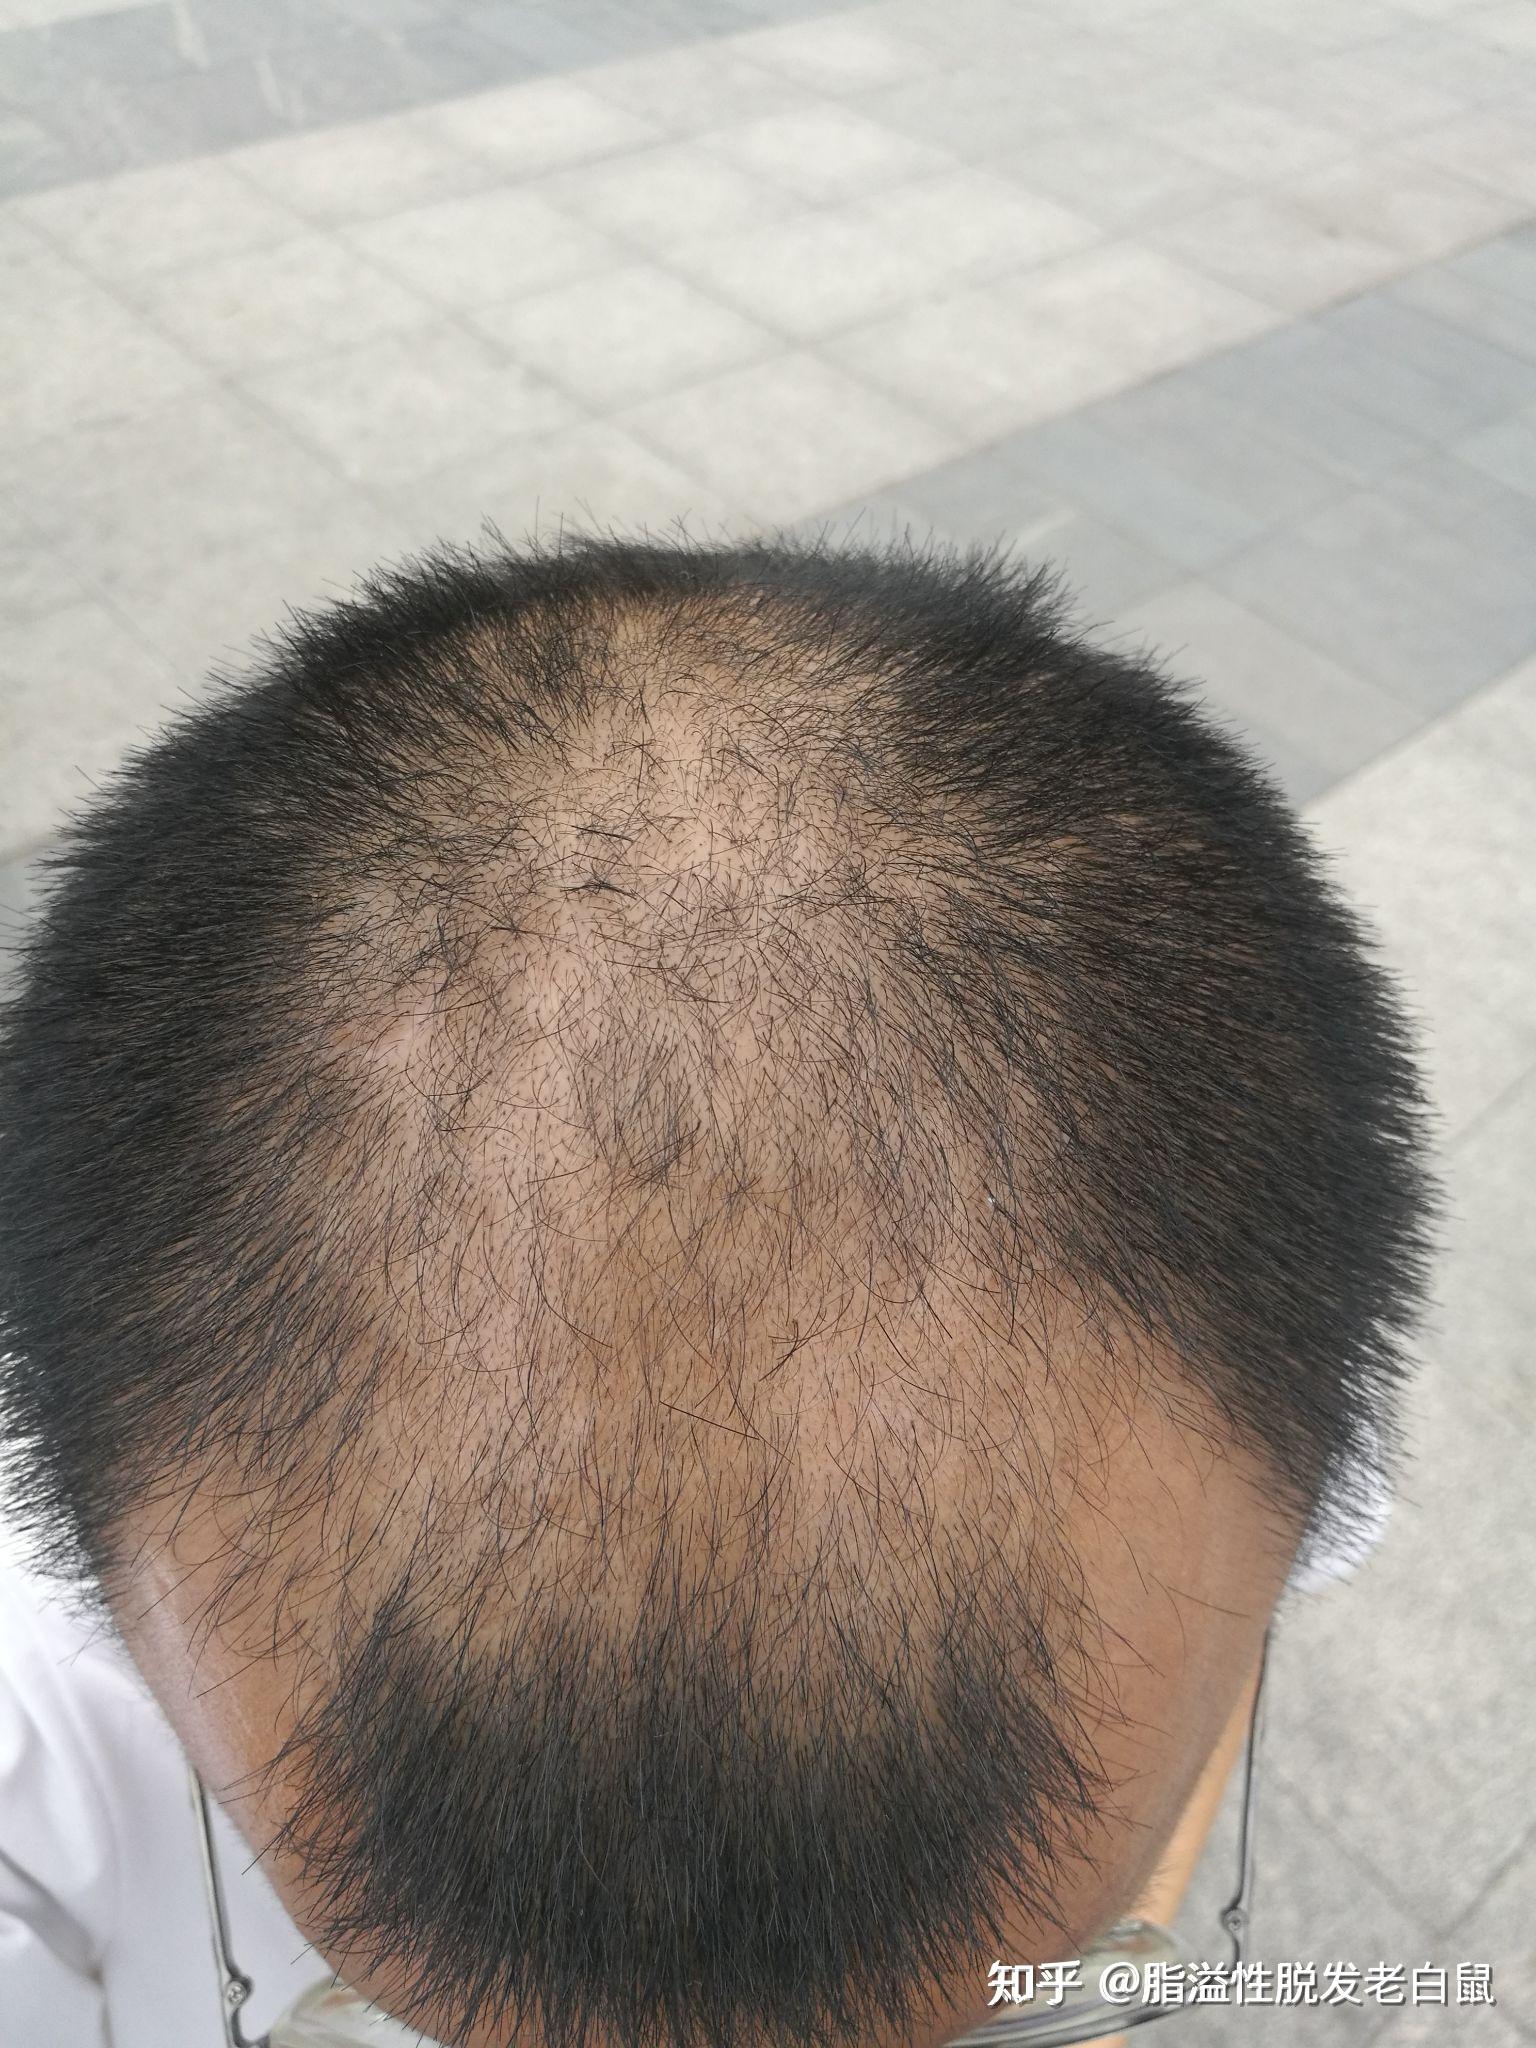 男性脂溢性脱发,恢复一年的效果展示 